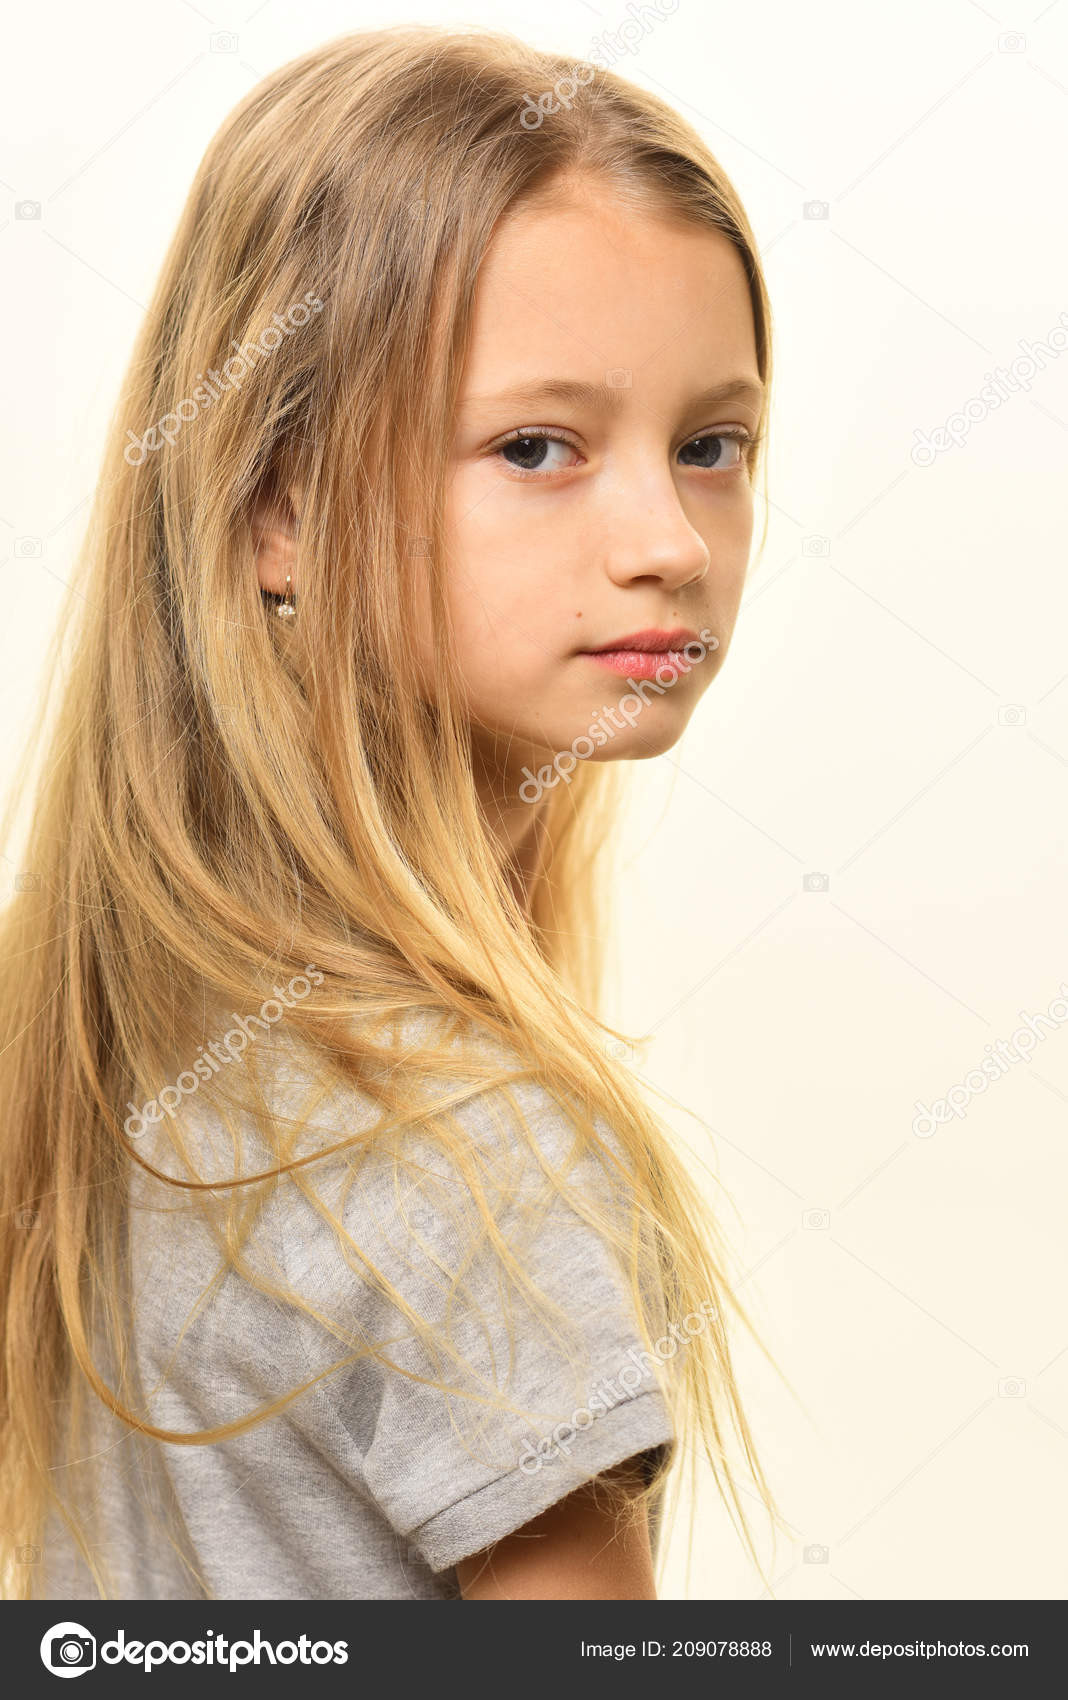 Haarschnitt Mädchen
 Haarschnitt Modische Frisur für kleine Mädchen blonden